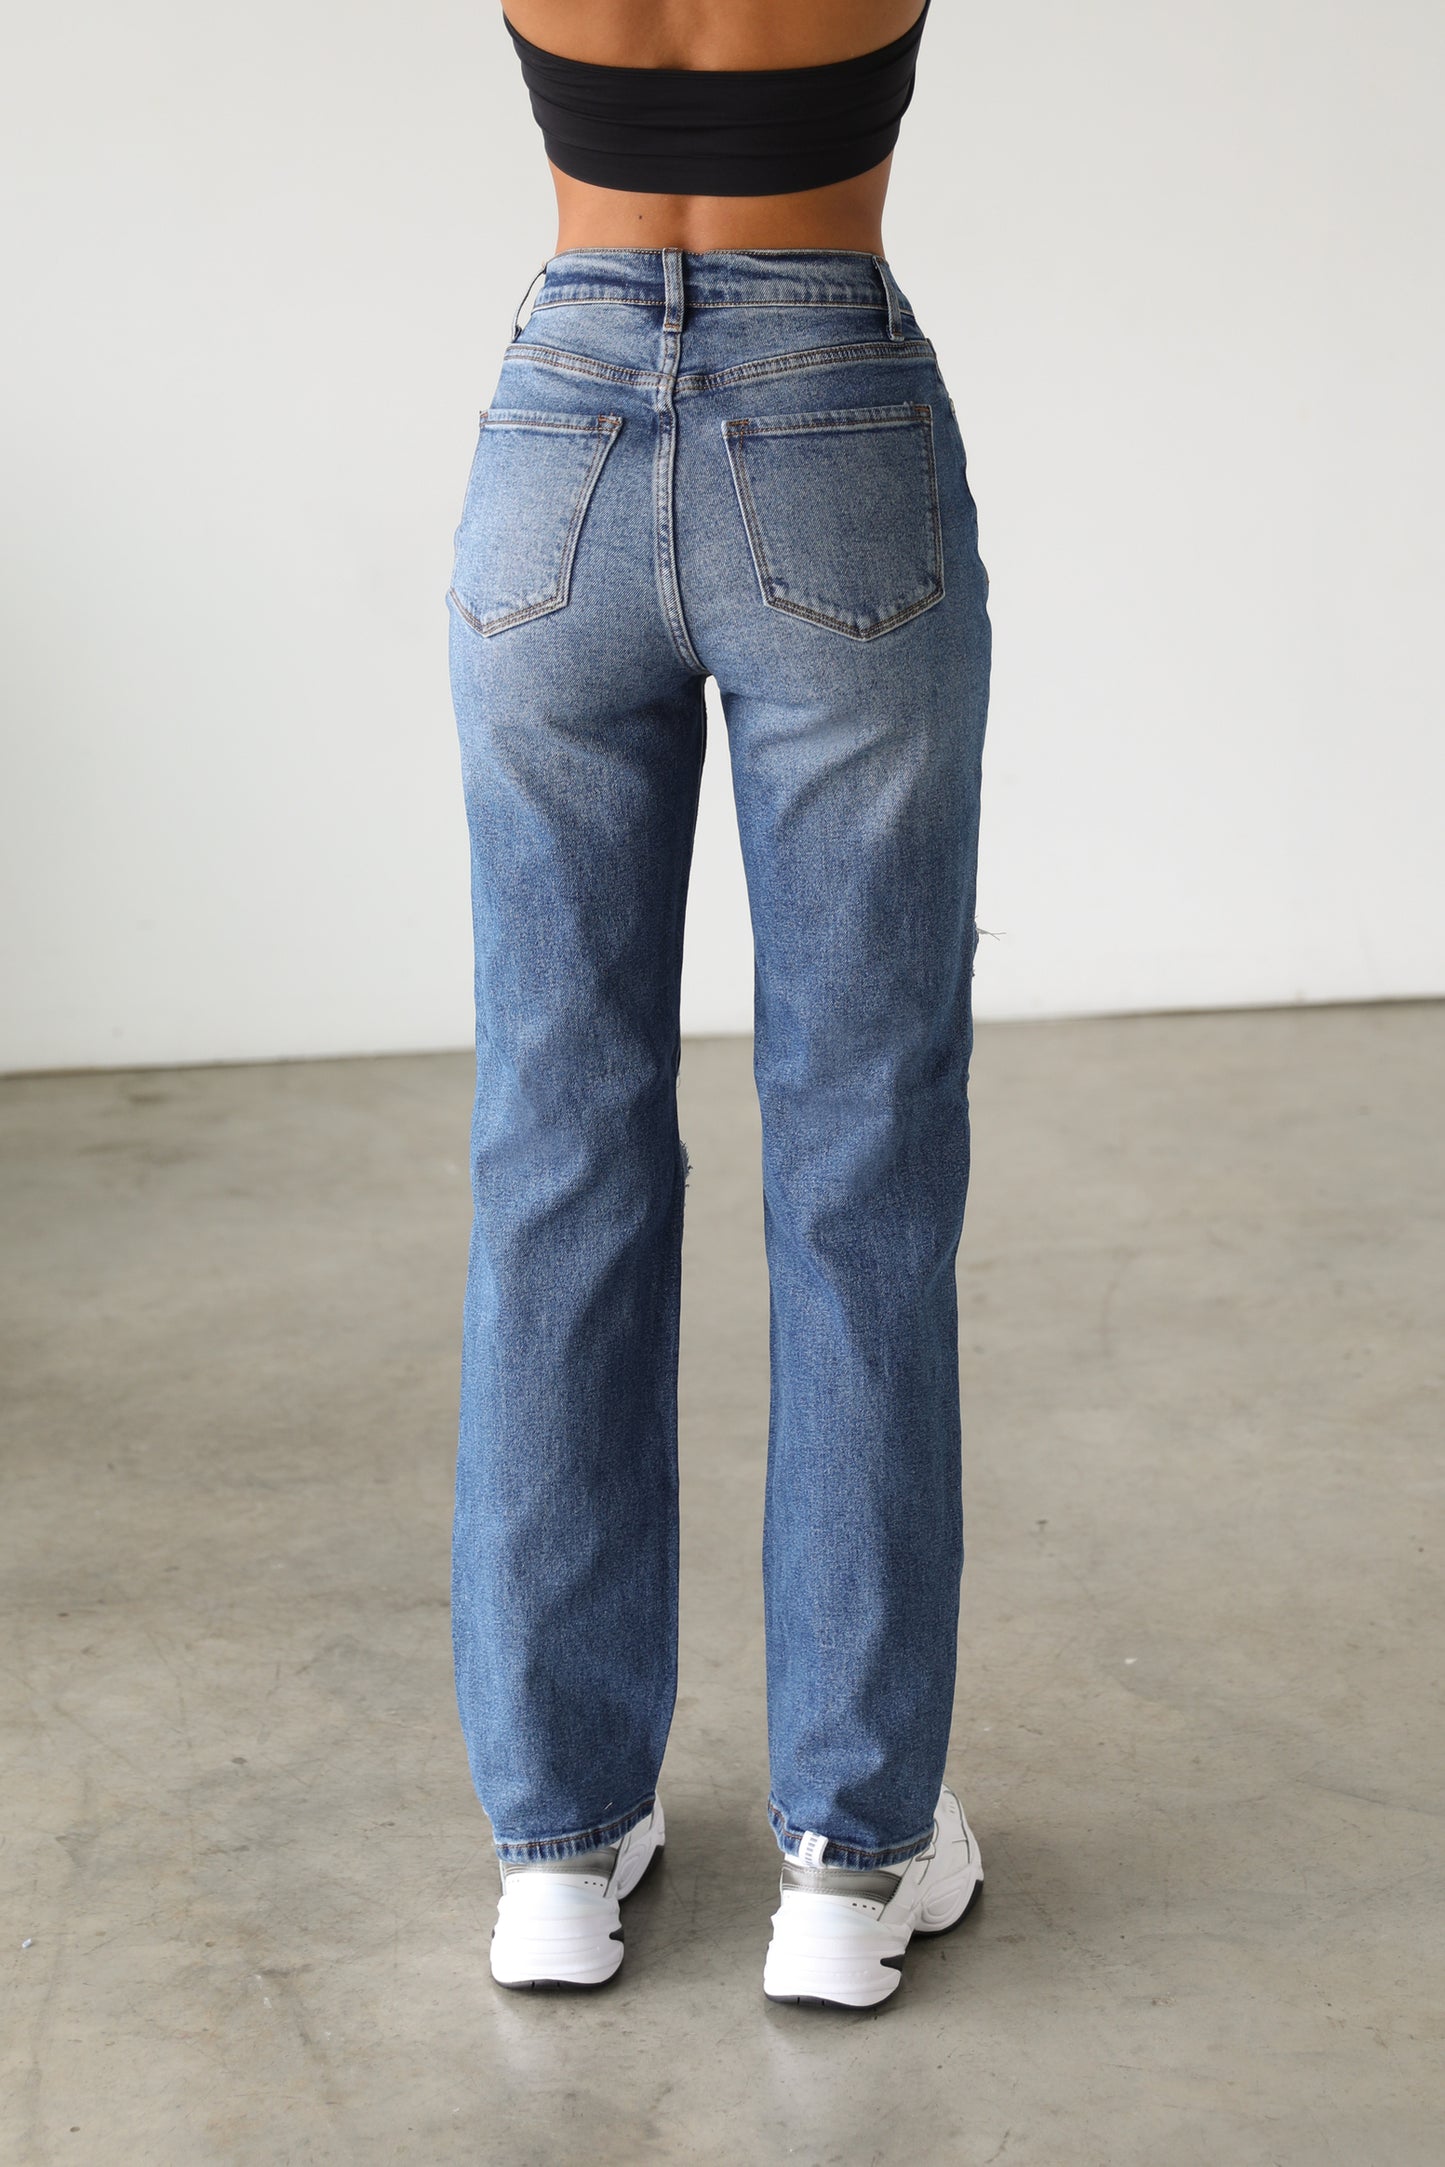 DOGMA DENIM - High Rise Straight Leg Denim Jeans - Dark - 7105